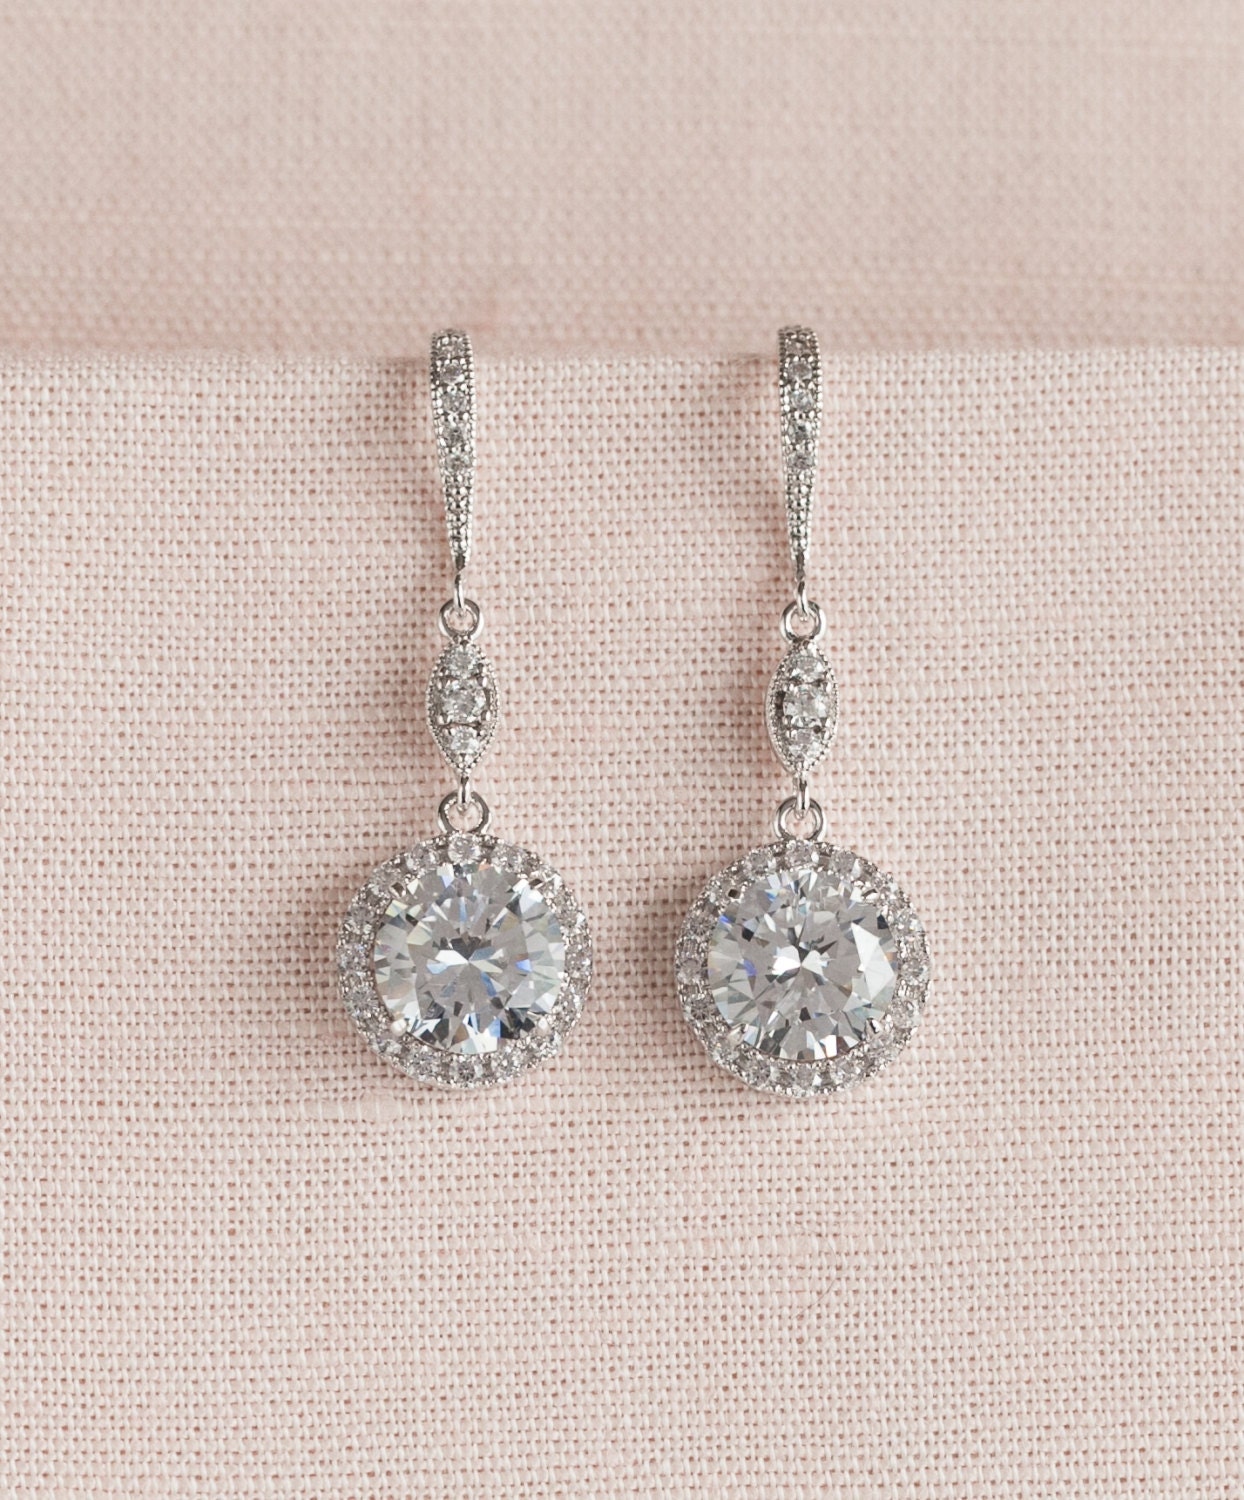 Crystal Bridal Earrings Wedding Jewelry Bridal Necklace Rose - Etsy UK